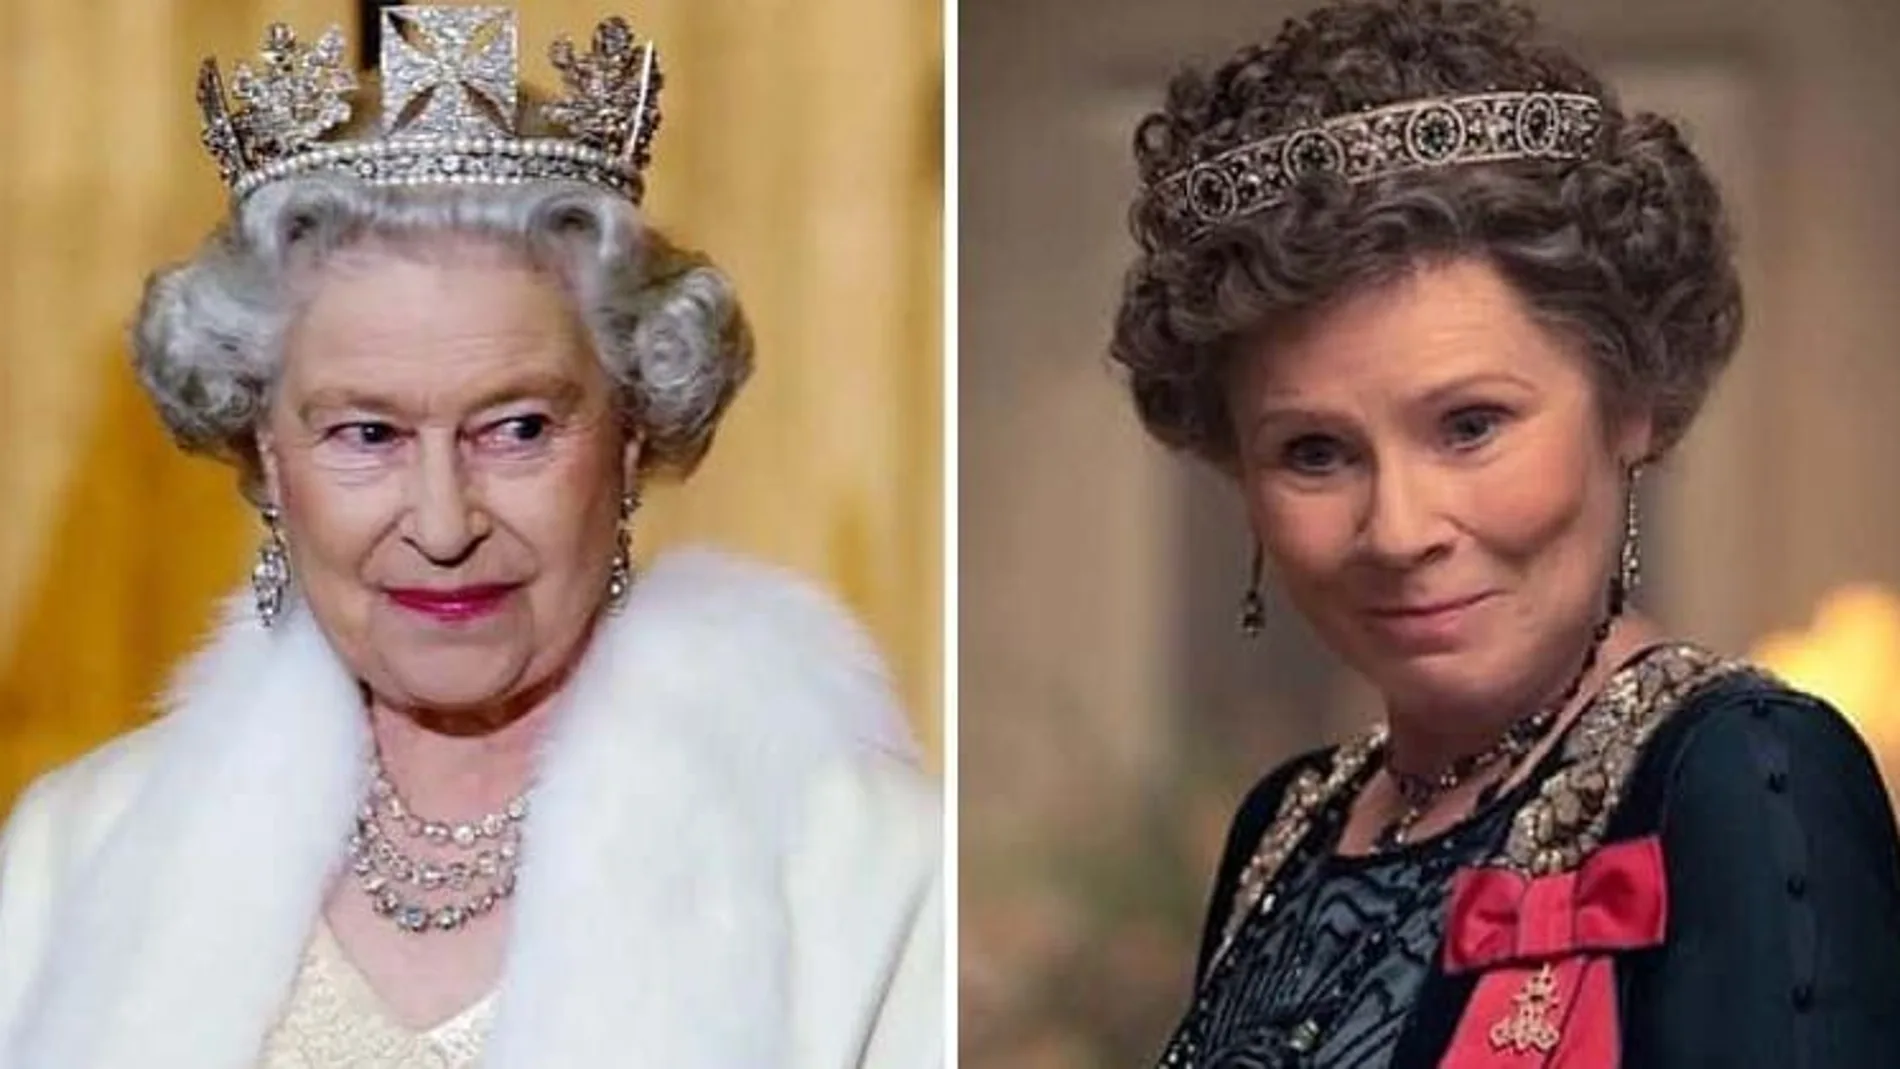 Imelda Staunton interpretará a la reina Isabel II en la quinta temporada de "The Crown"